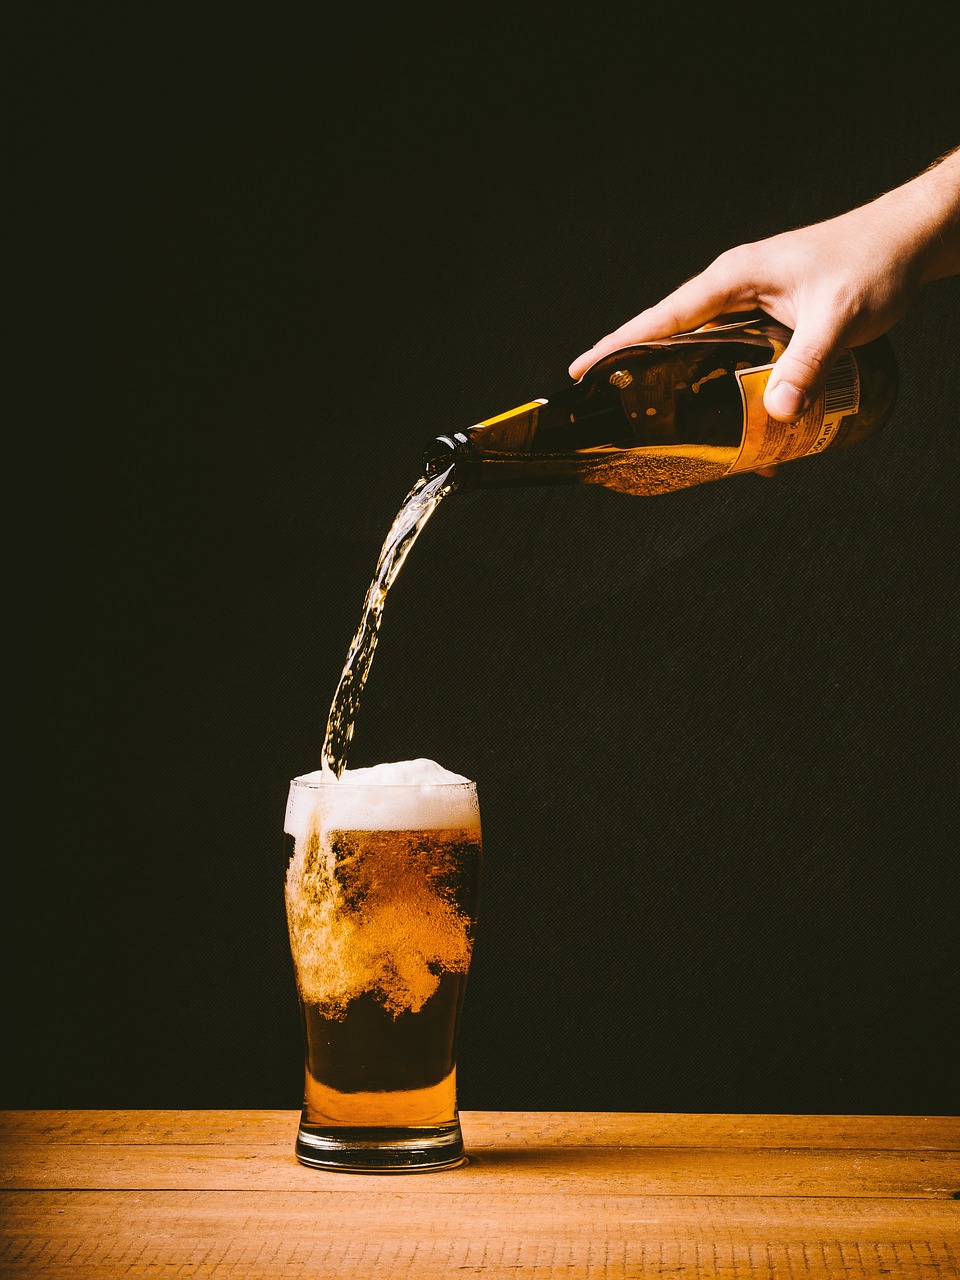 Bia hoa quả dễ uống hơn so với các loại bia thông thường